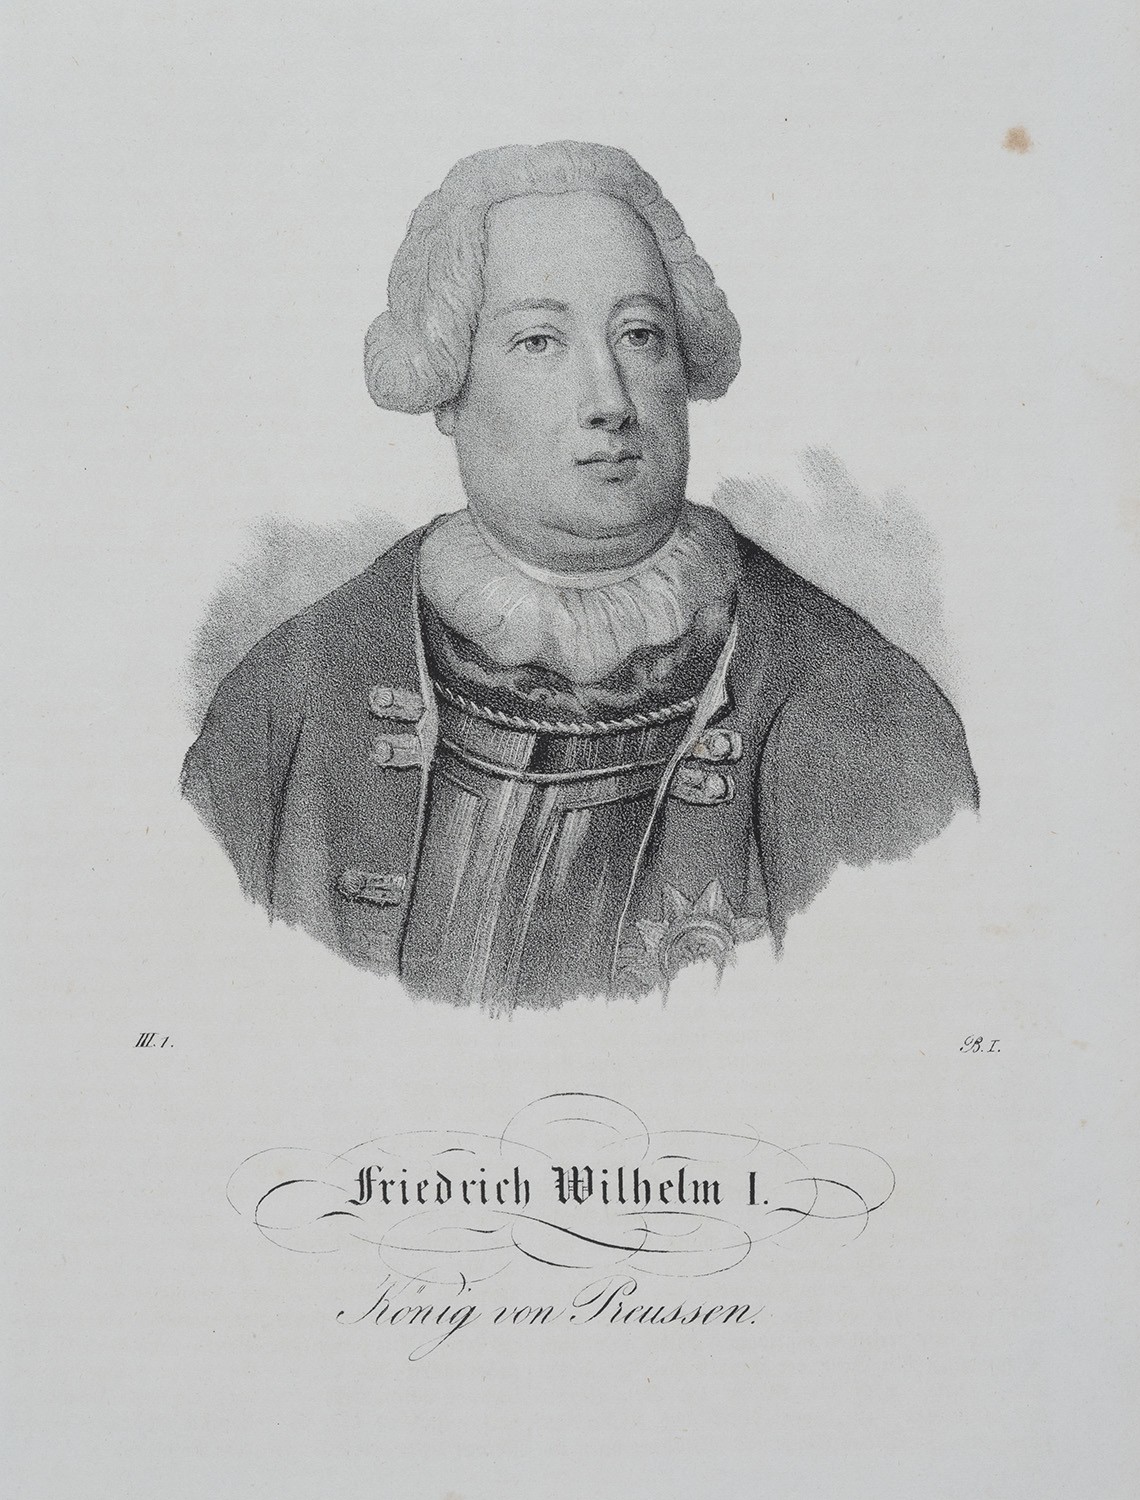 Friedrich Wilhelm I., König in Preußen (1688-1740, reg. 1713-1740) (Landesgeschichtliche Vereinigung für die Mark Brandenburg e.V., Archiv CC BY)